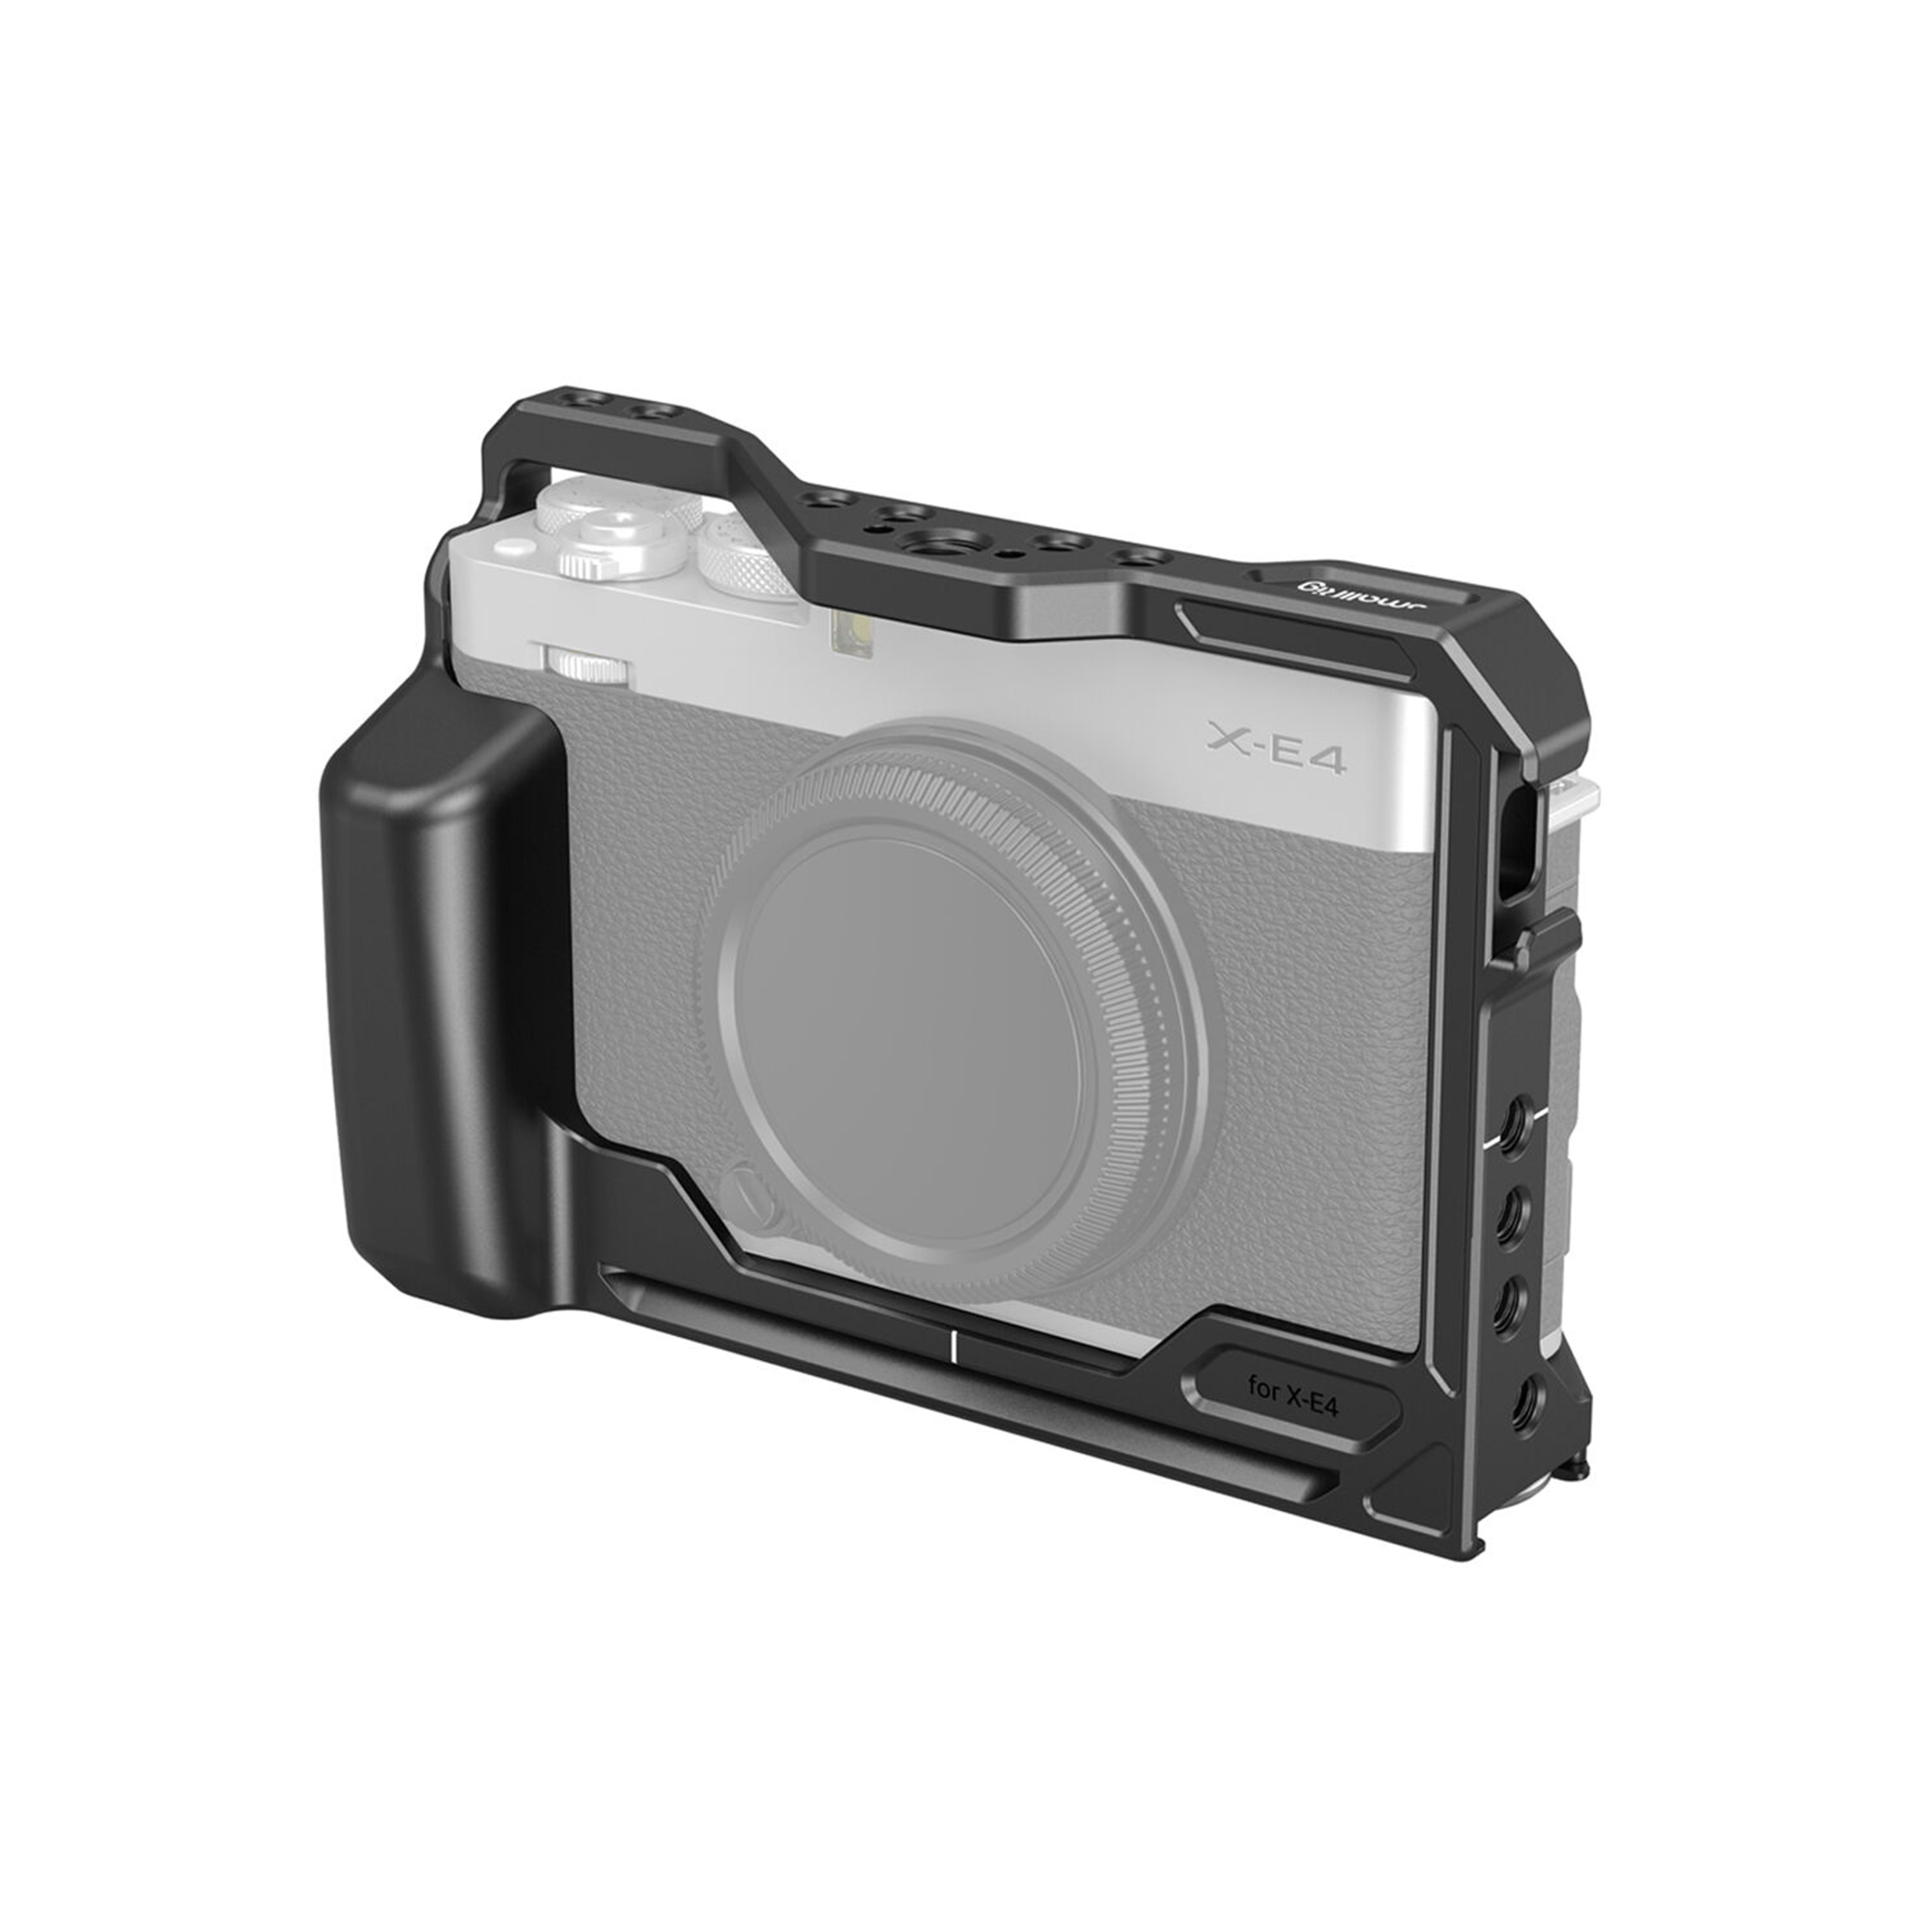 SmallRig Cage for Fujifilm X-E4 Camera 3230